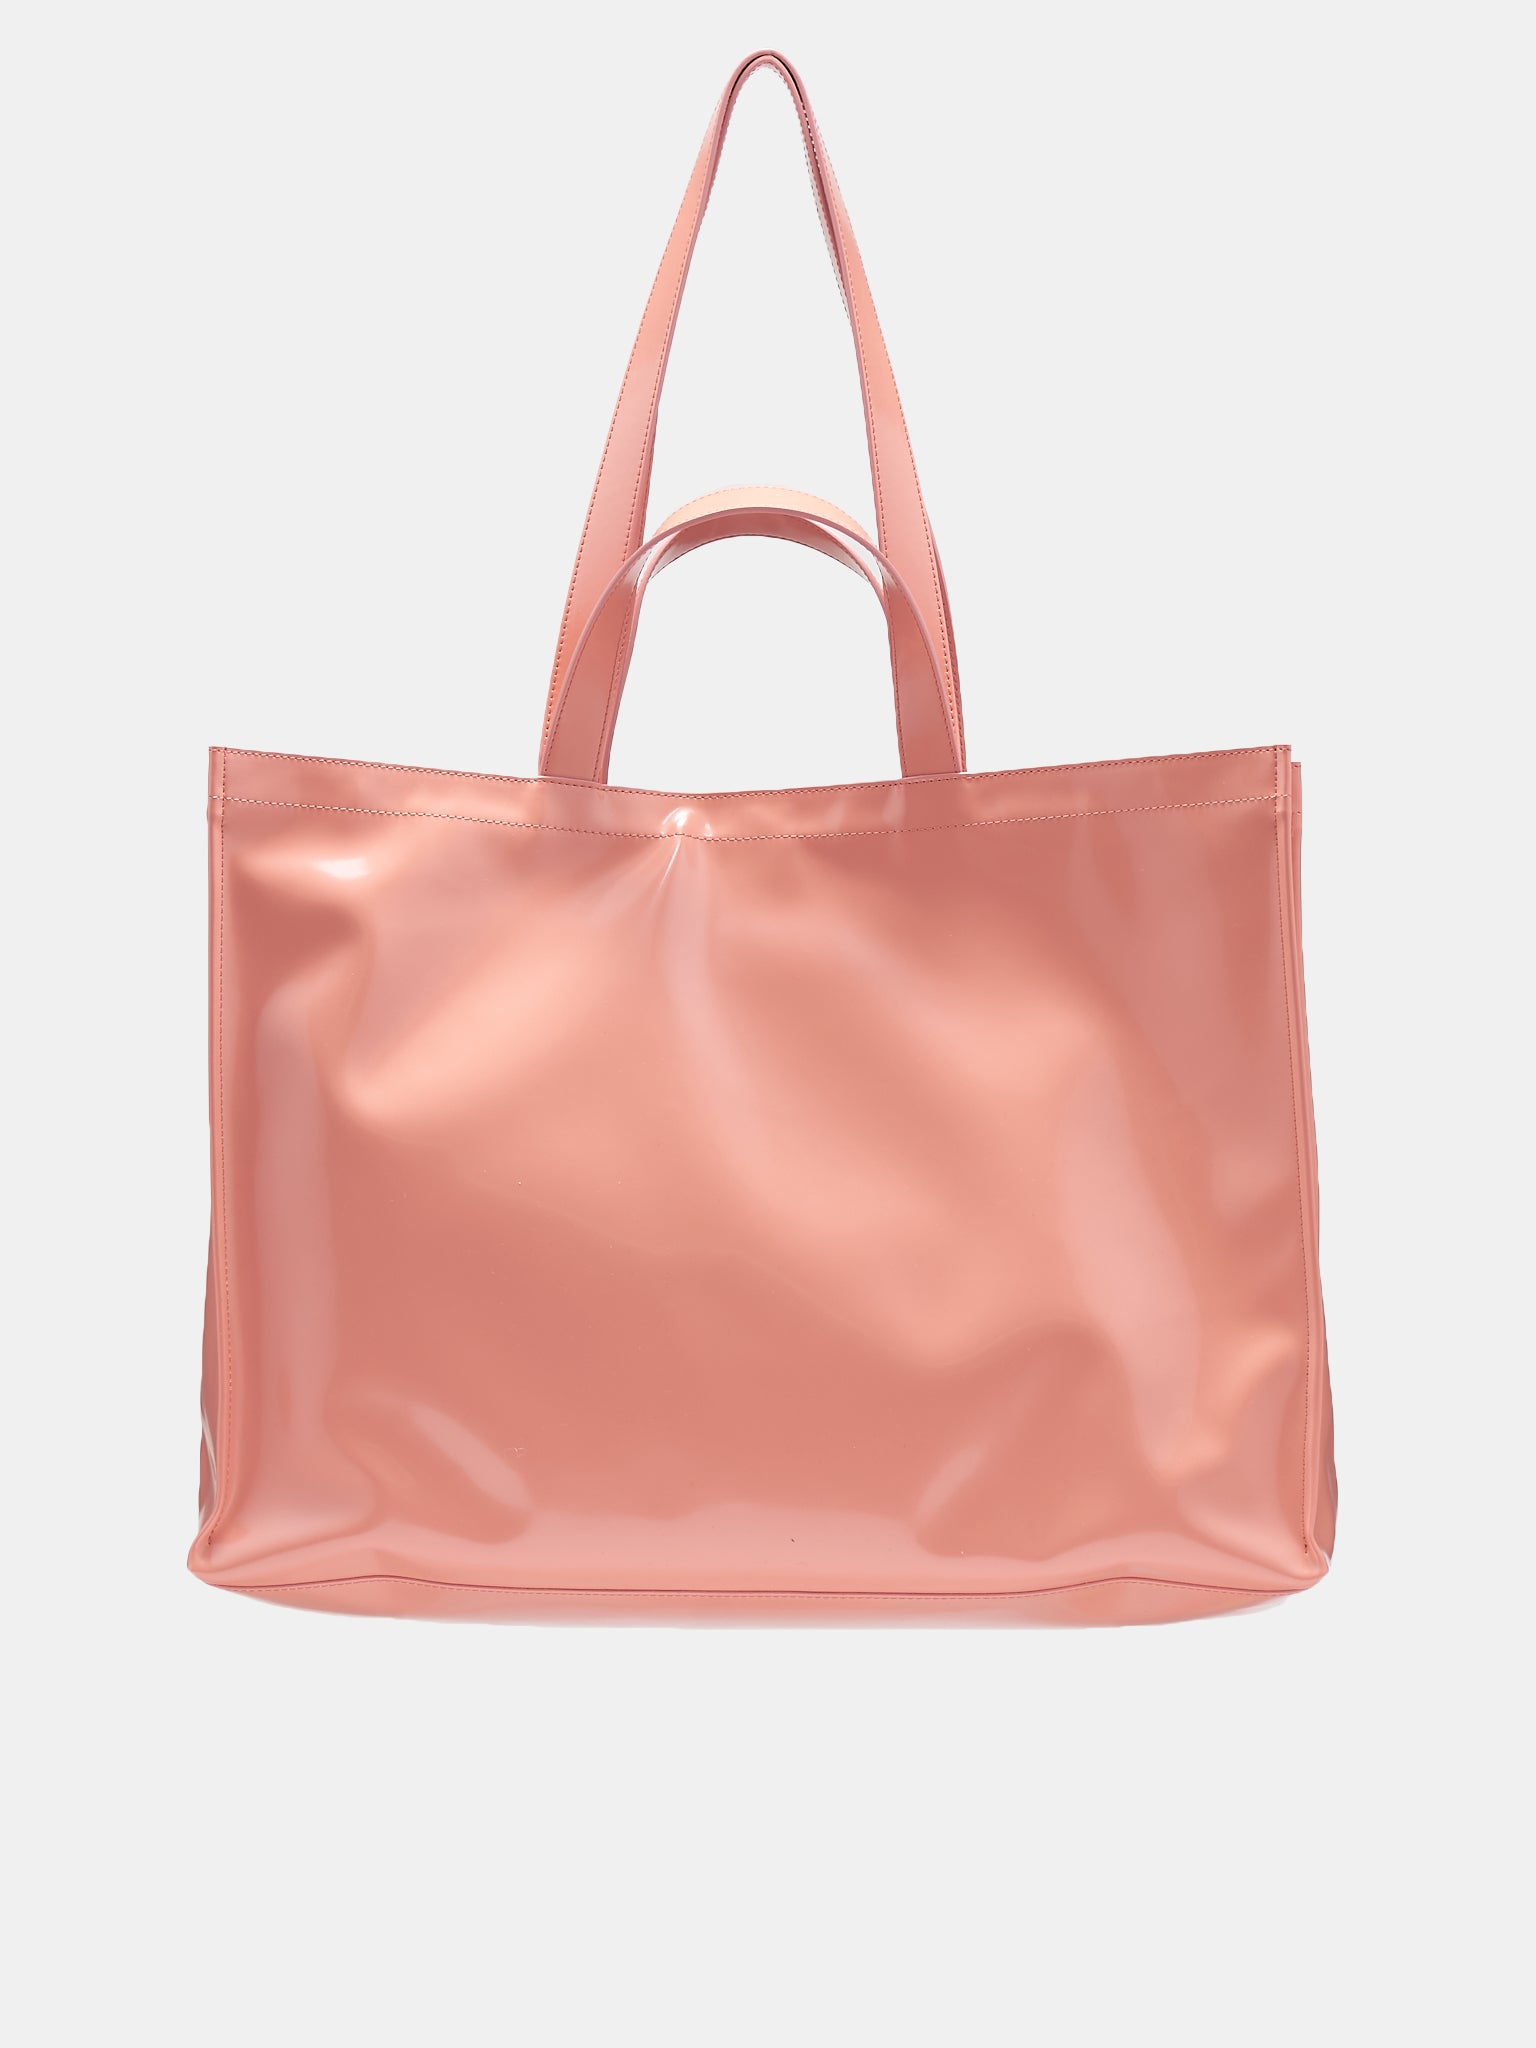 David Jones Tote Bag in Salmon Pink